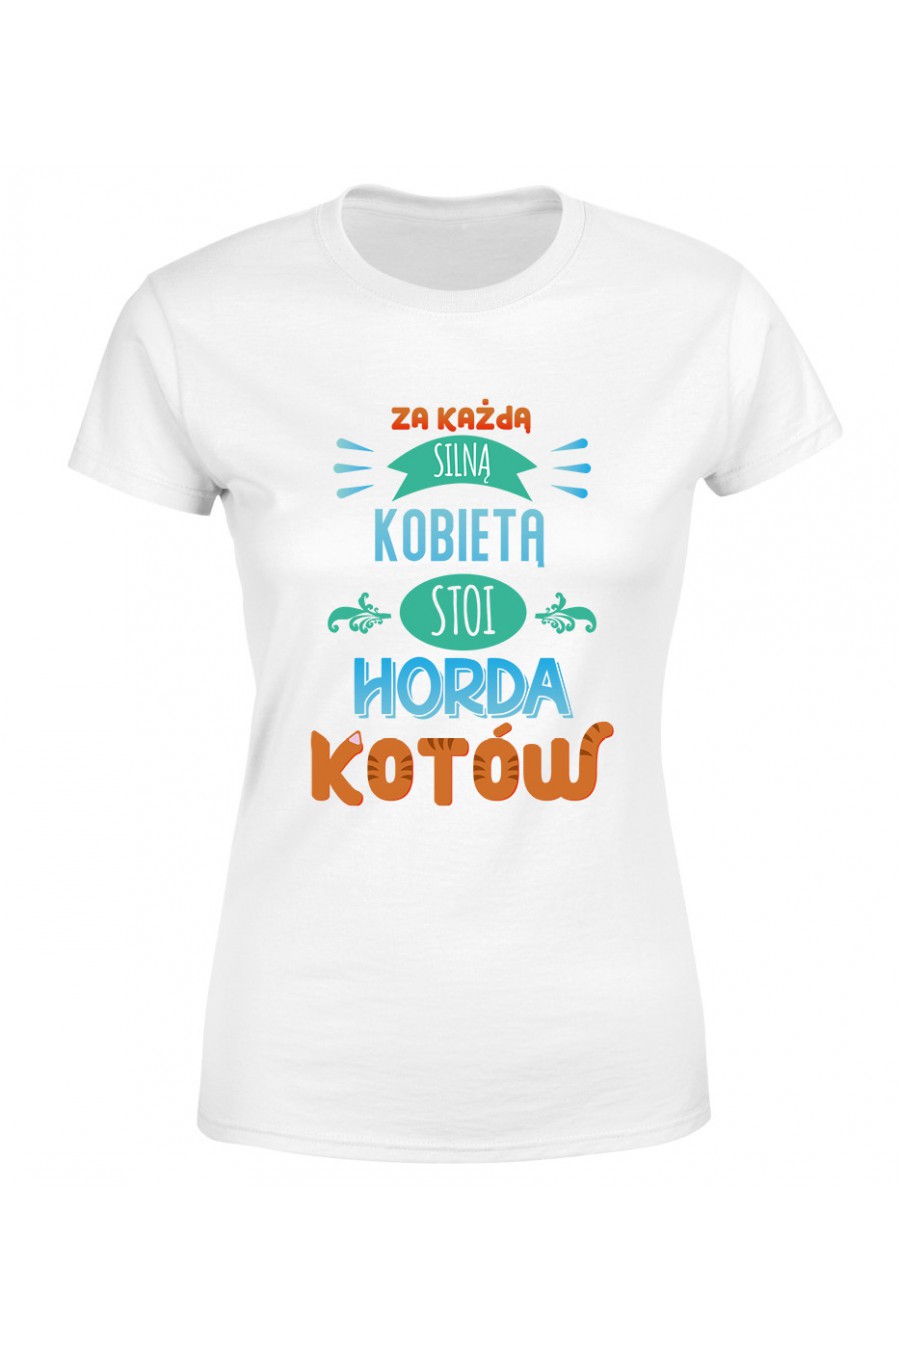 Koszulka Damska Za Każdą Silną Kobietą Stoi Horda Kotów